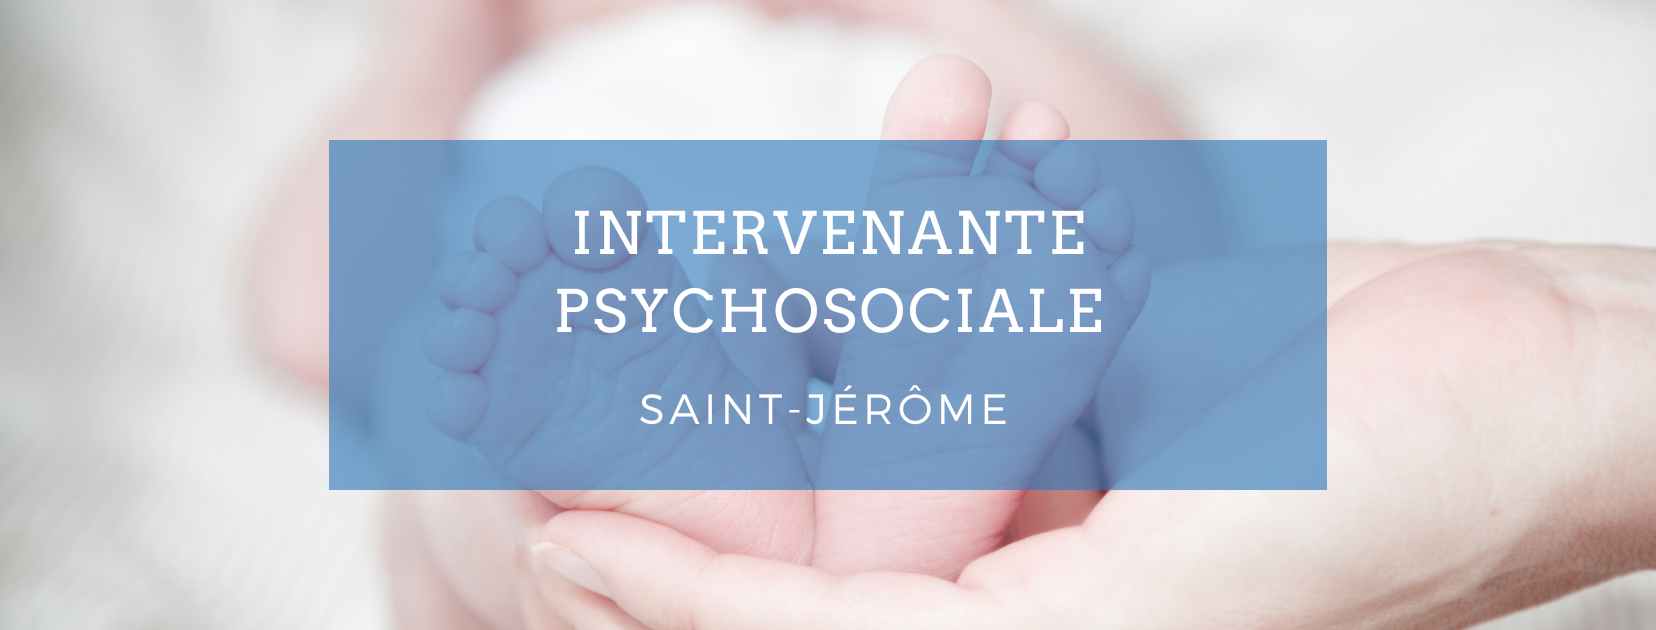 Emploi intervenante psychosociale – Saint-Jérôme